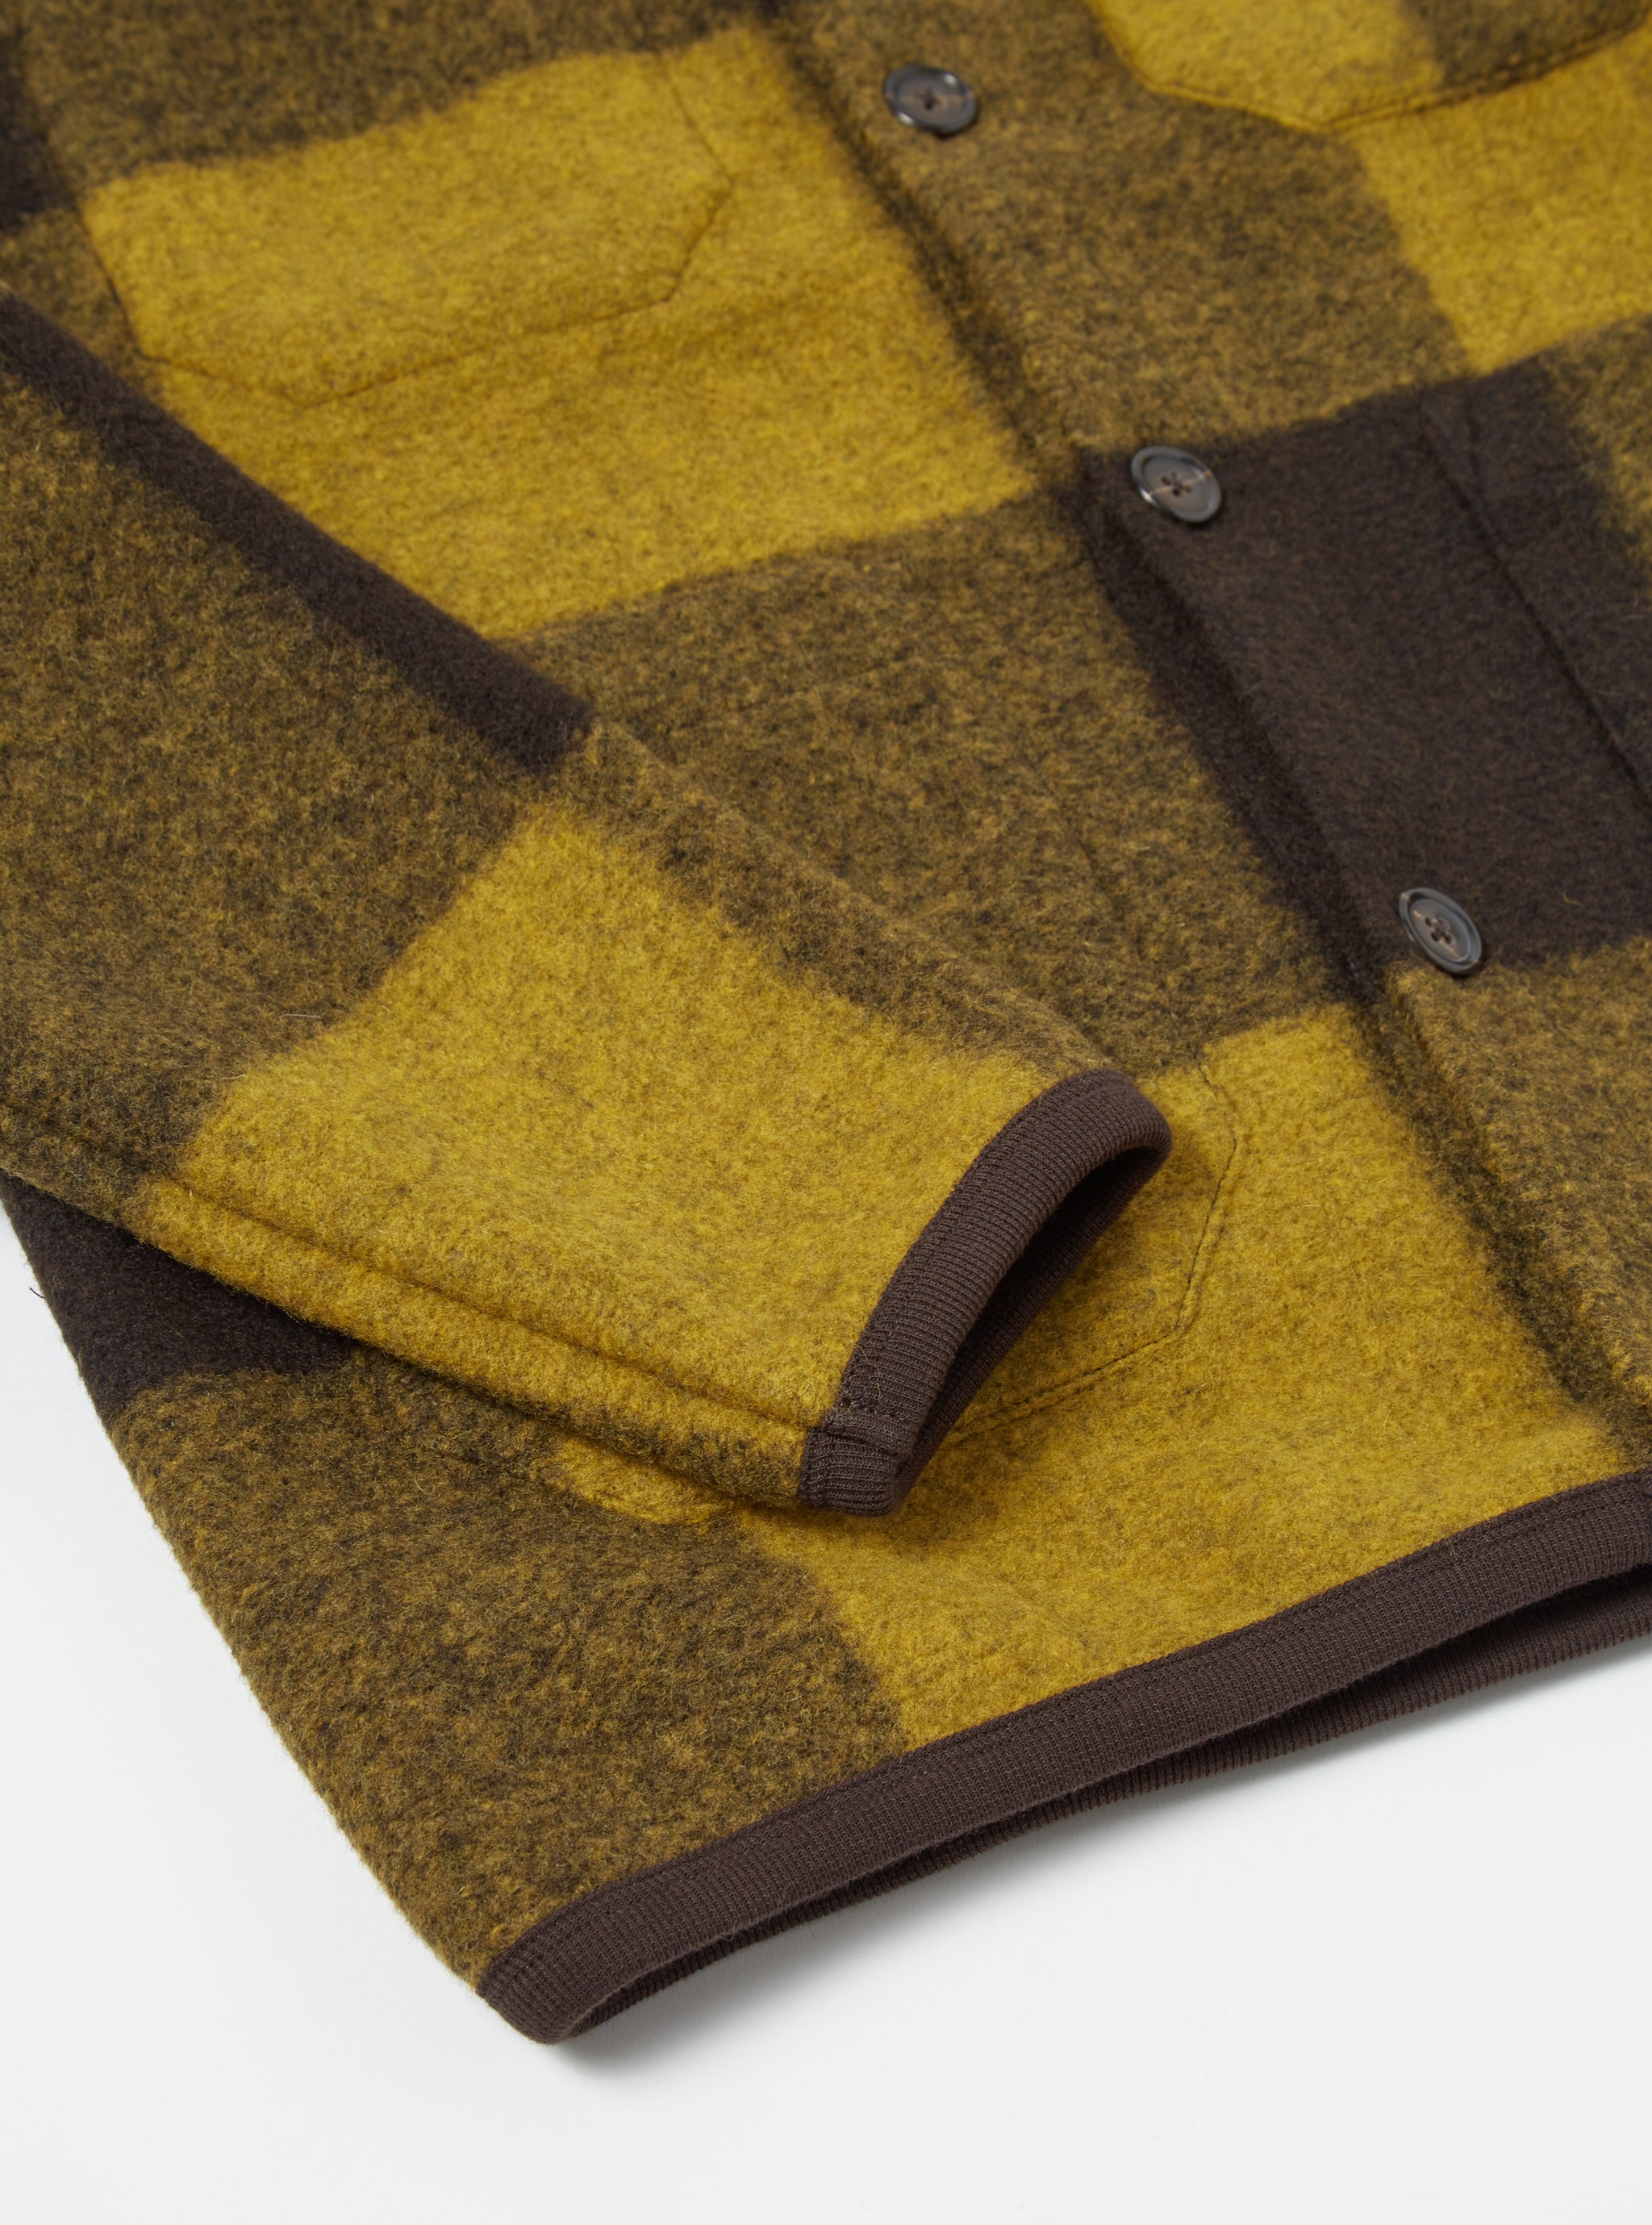 Universal Works Cardigan in Mustard/Brown Studio Check Fleece